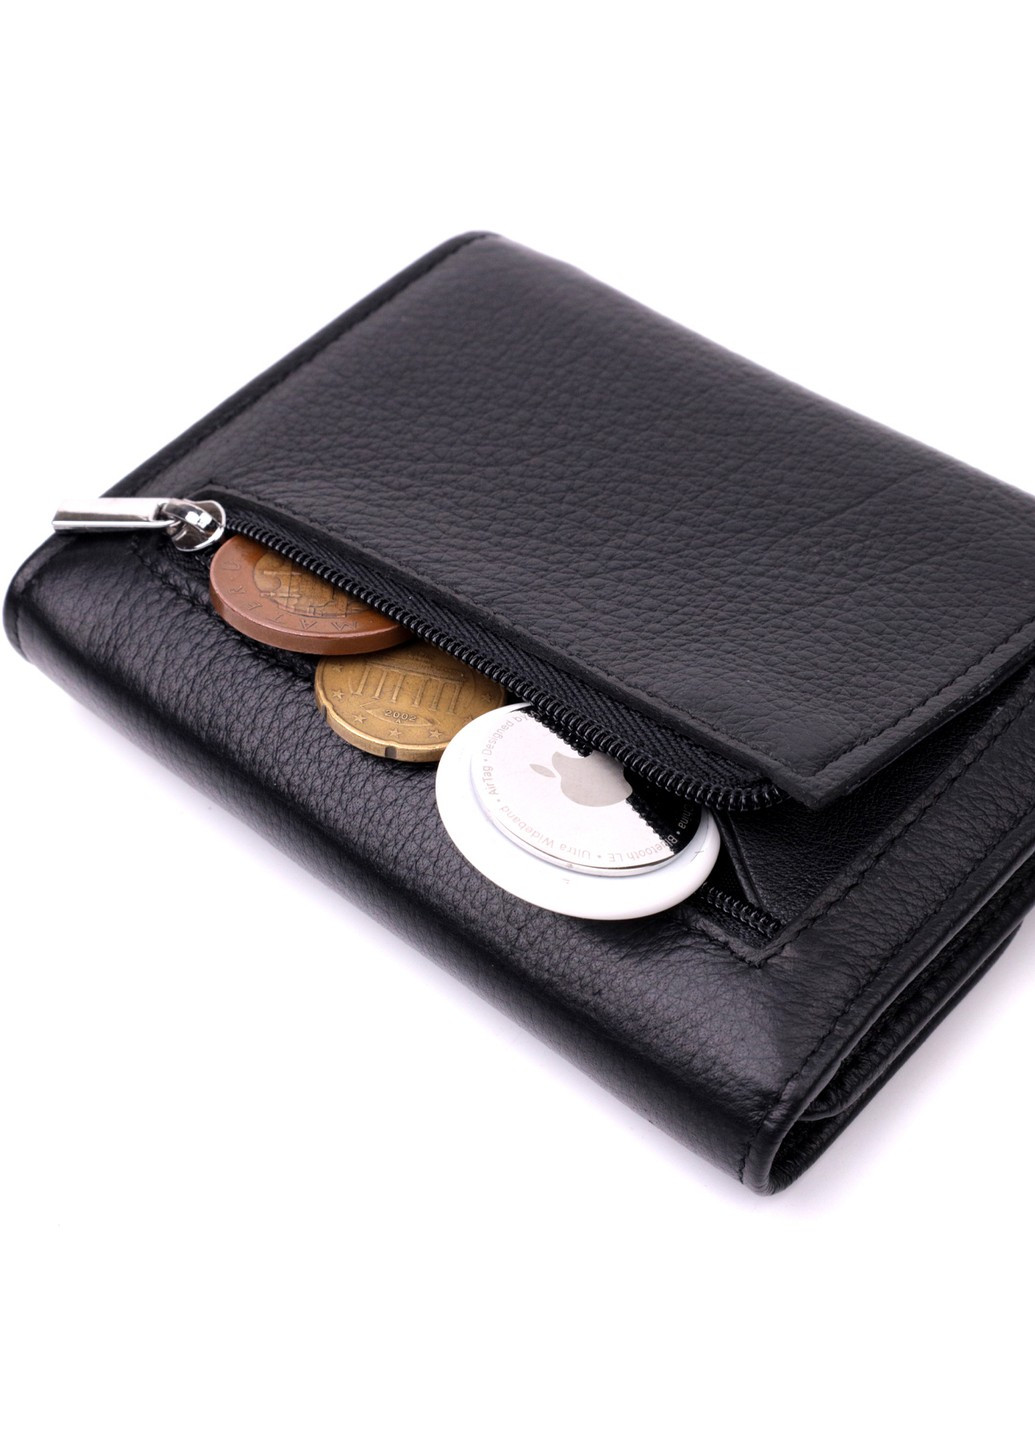 Симпатичный женский кошелек с монетницей из натуральной кожи 19481 Черный st leather (277980416)